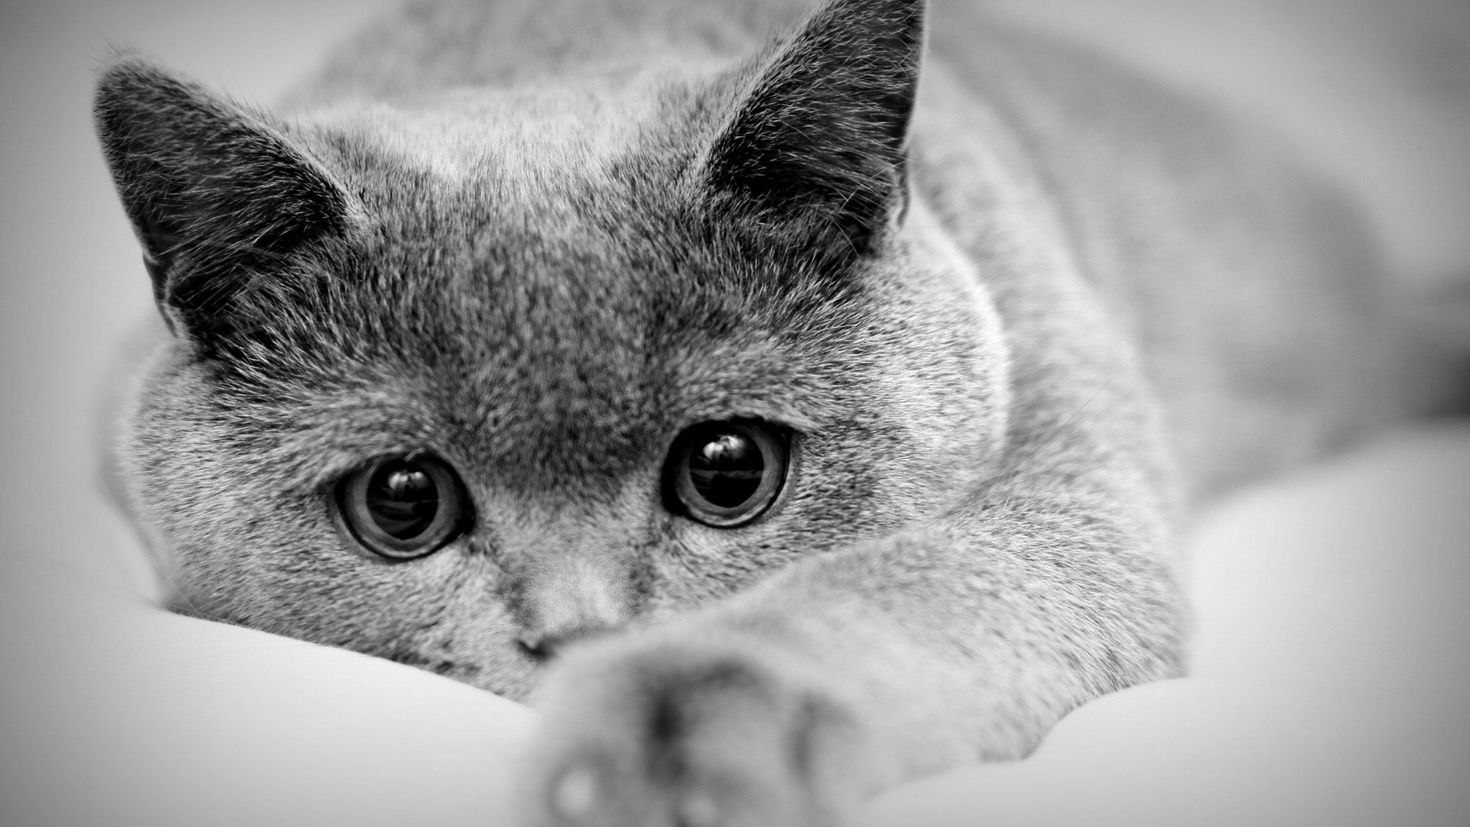 Что на фотке. Красивые черно белые картинки. Красивая картинка чеонобел. Грустная кошка. Скучающий кот.